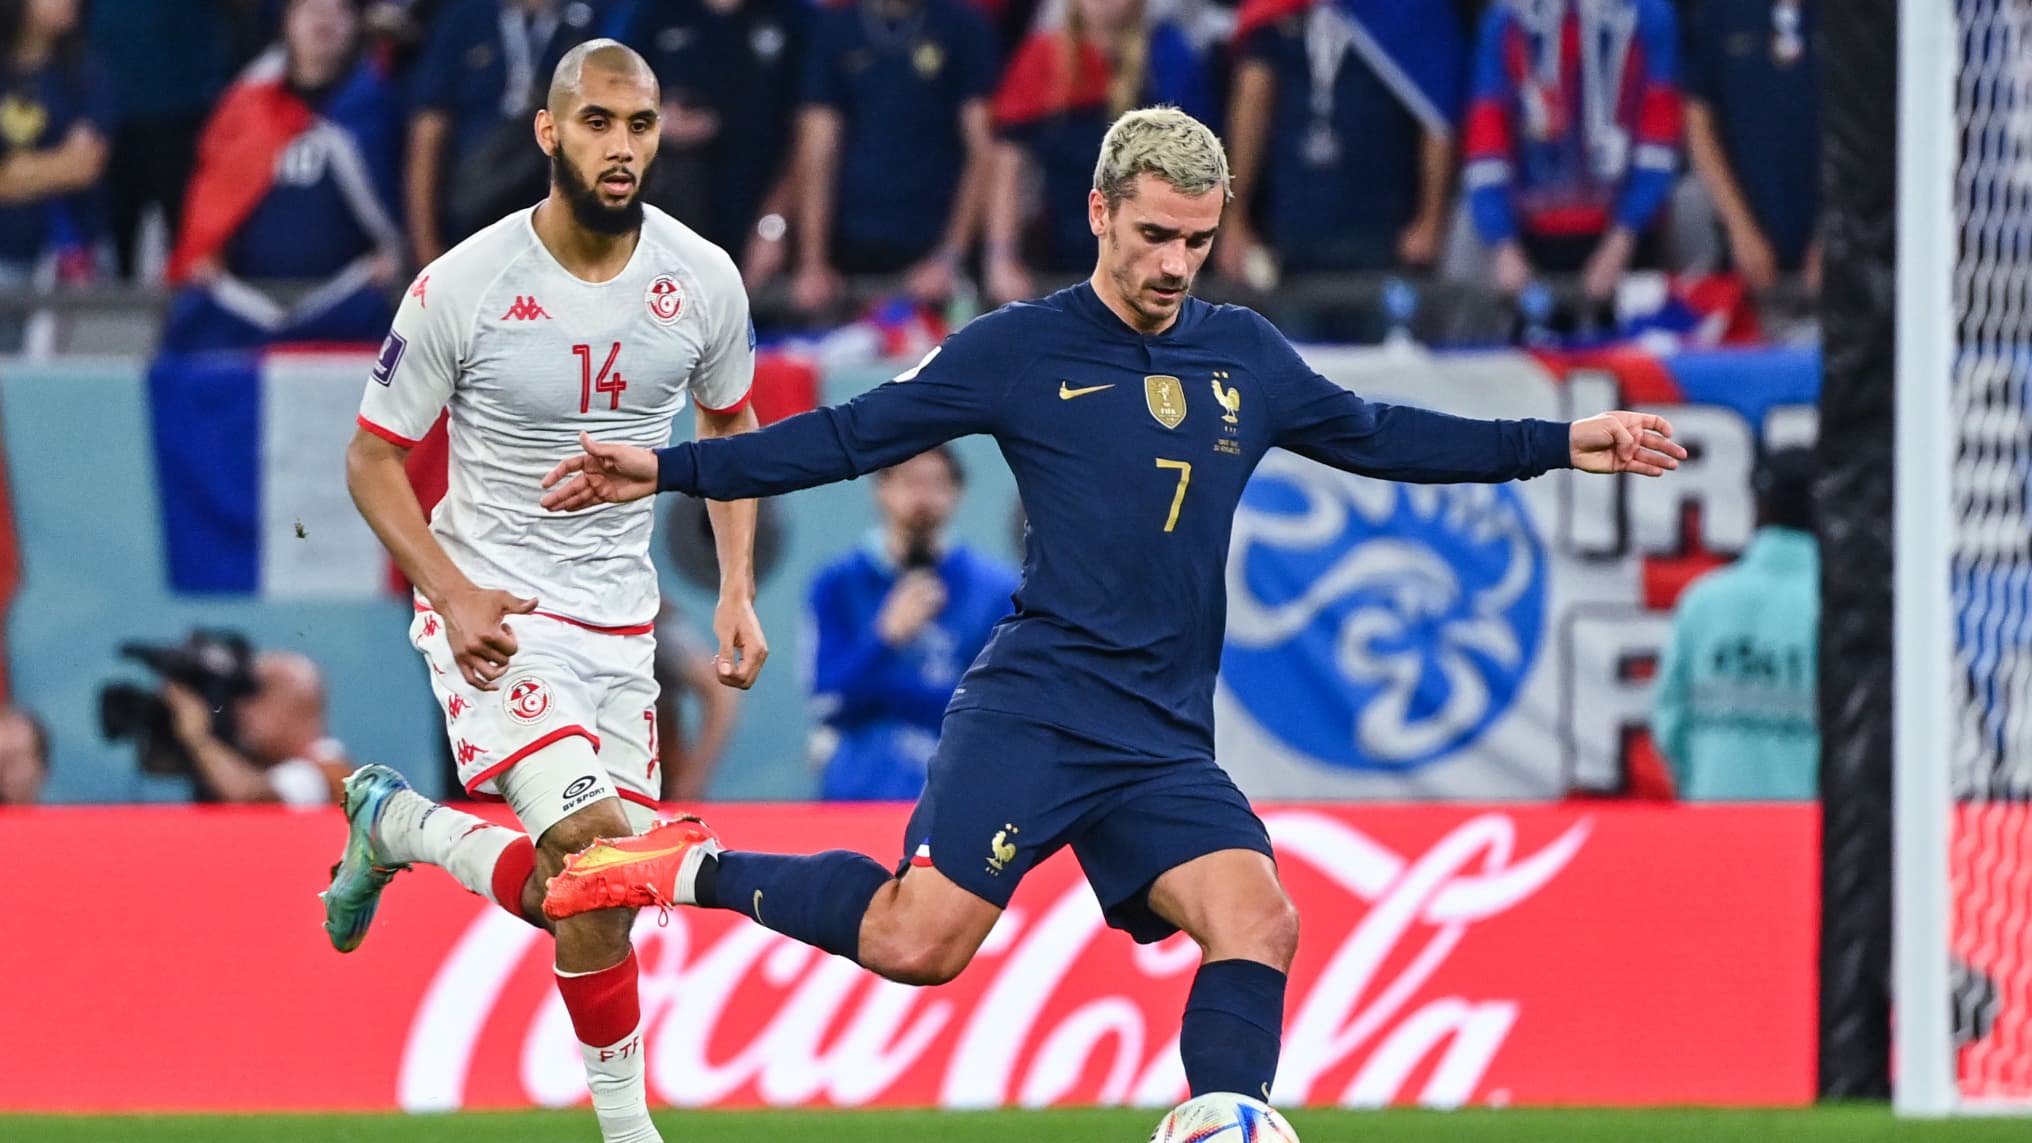 Brésil, Portugal, Pays-Bas, Croatie, France Nike dévoile les maillots  pour la Coupe du Monde de football Qatar 2022 